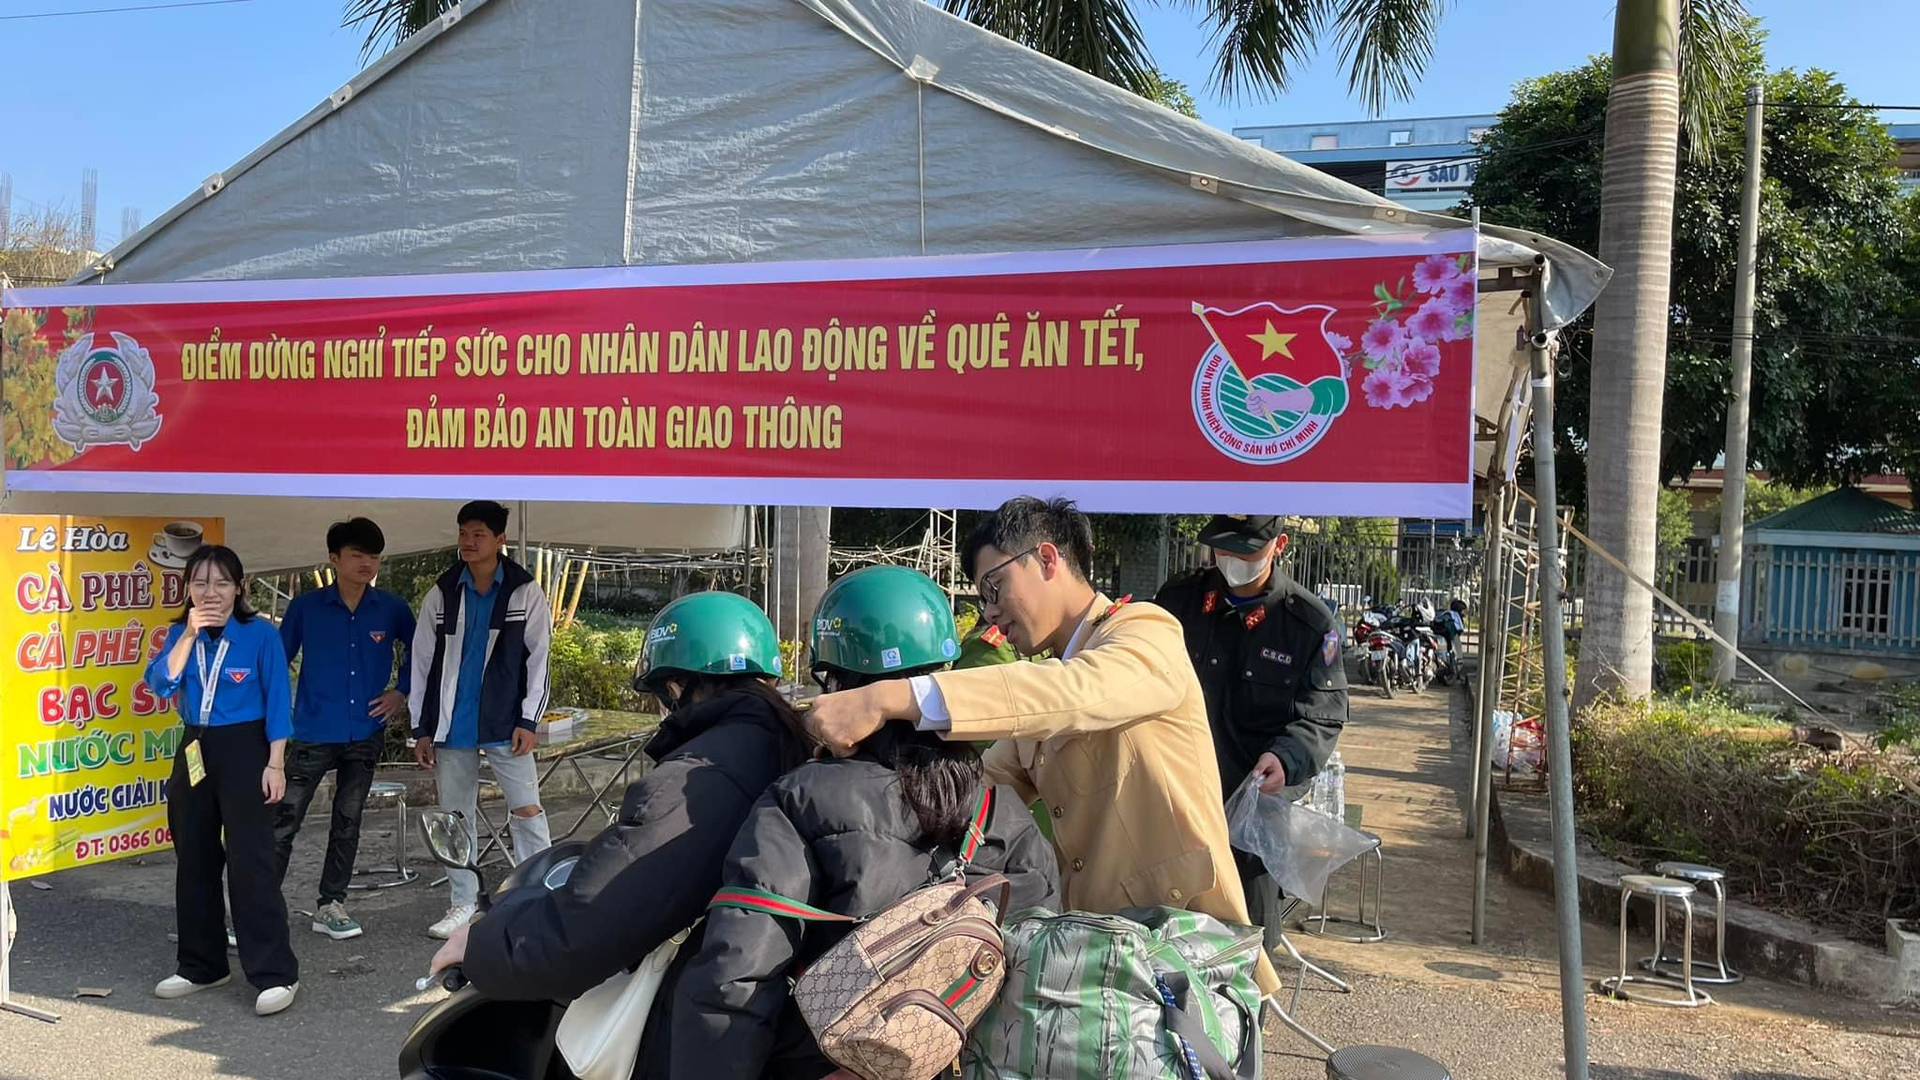 Bên cạnh việc tặng nước uống, Phòng CSGT Công an tỉnh Sơn La còn tặng người dân đang trên đường về quê những chiếc mũ bảo hiểm đạt chuẩn để đảm bảo an toàn.